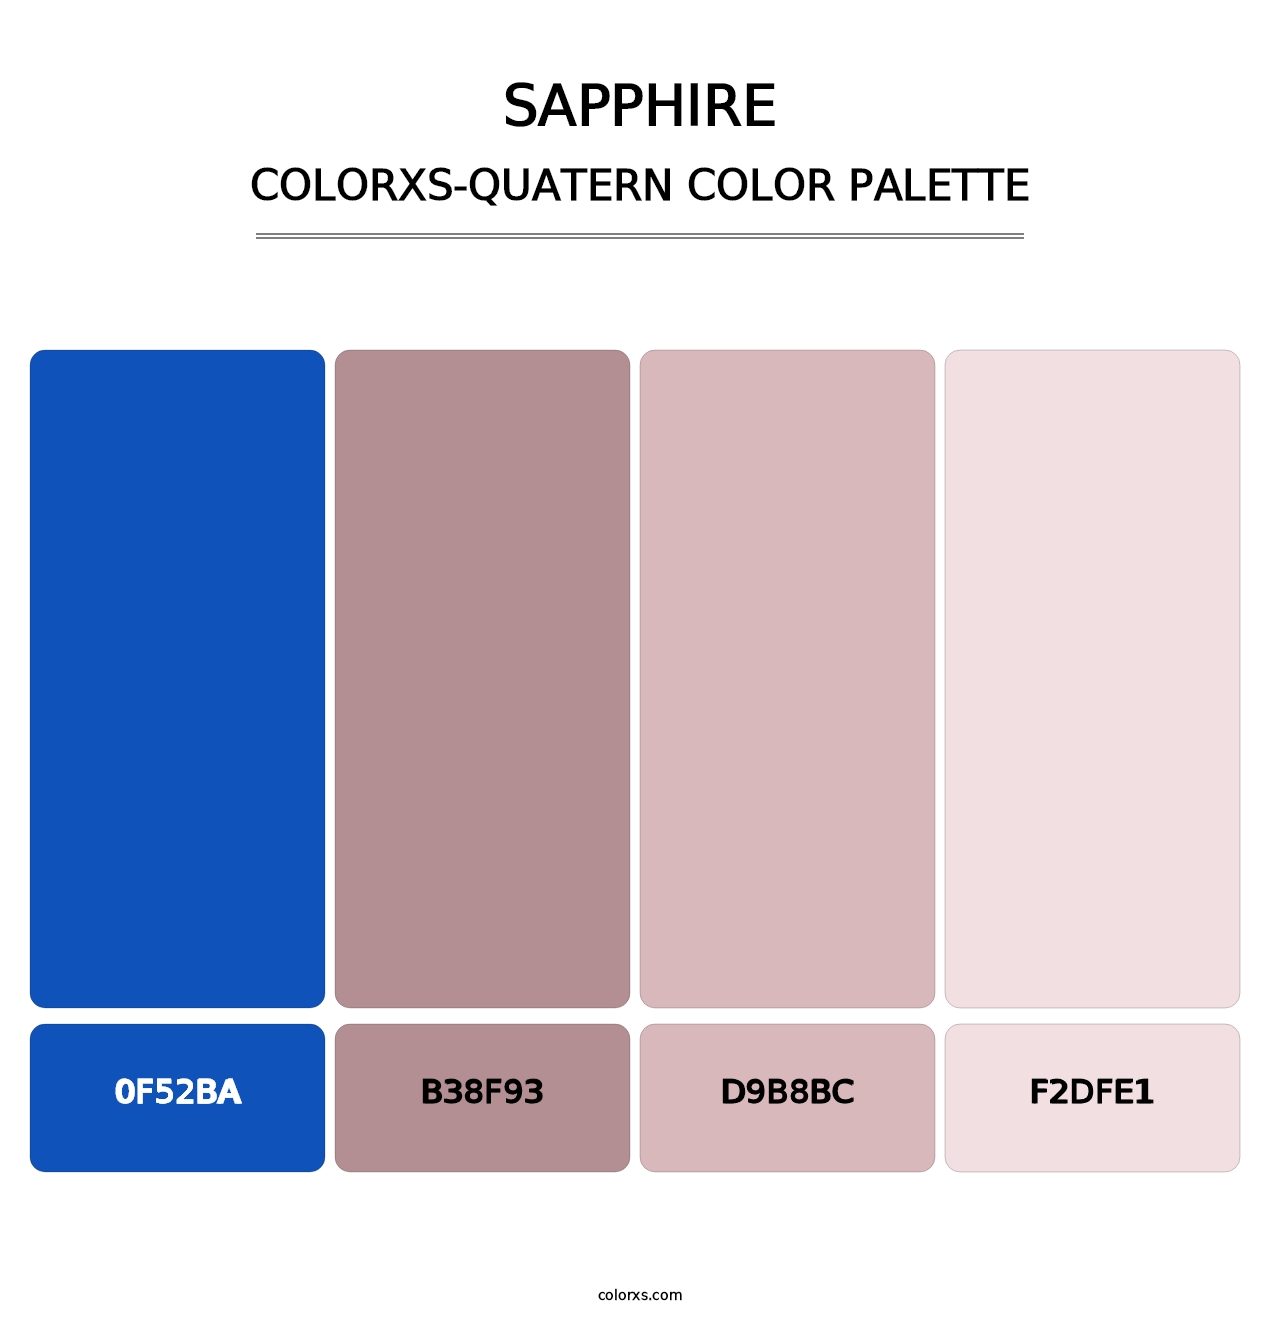 Sapphire - Colorxs Quatern Palette